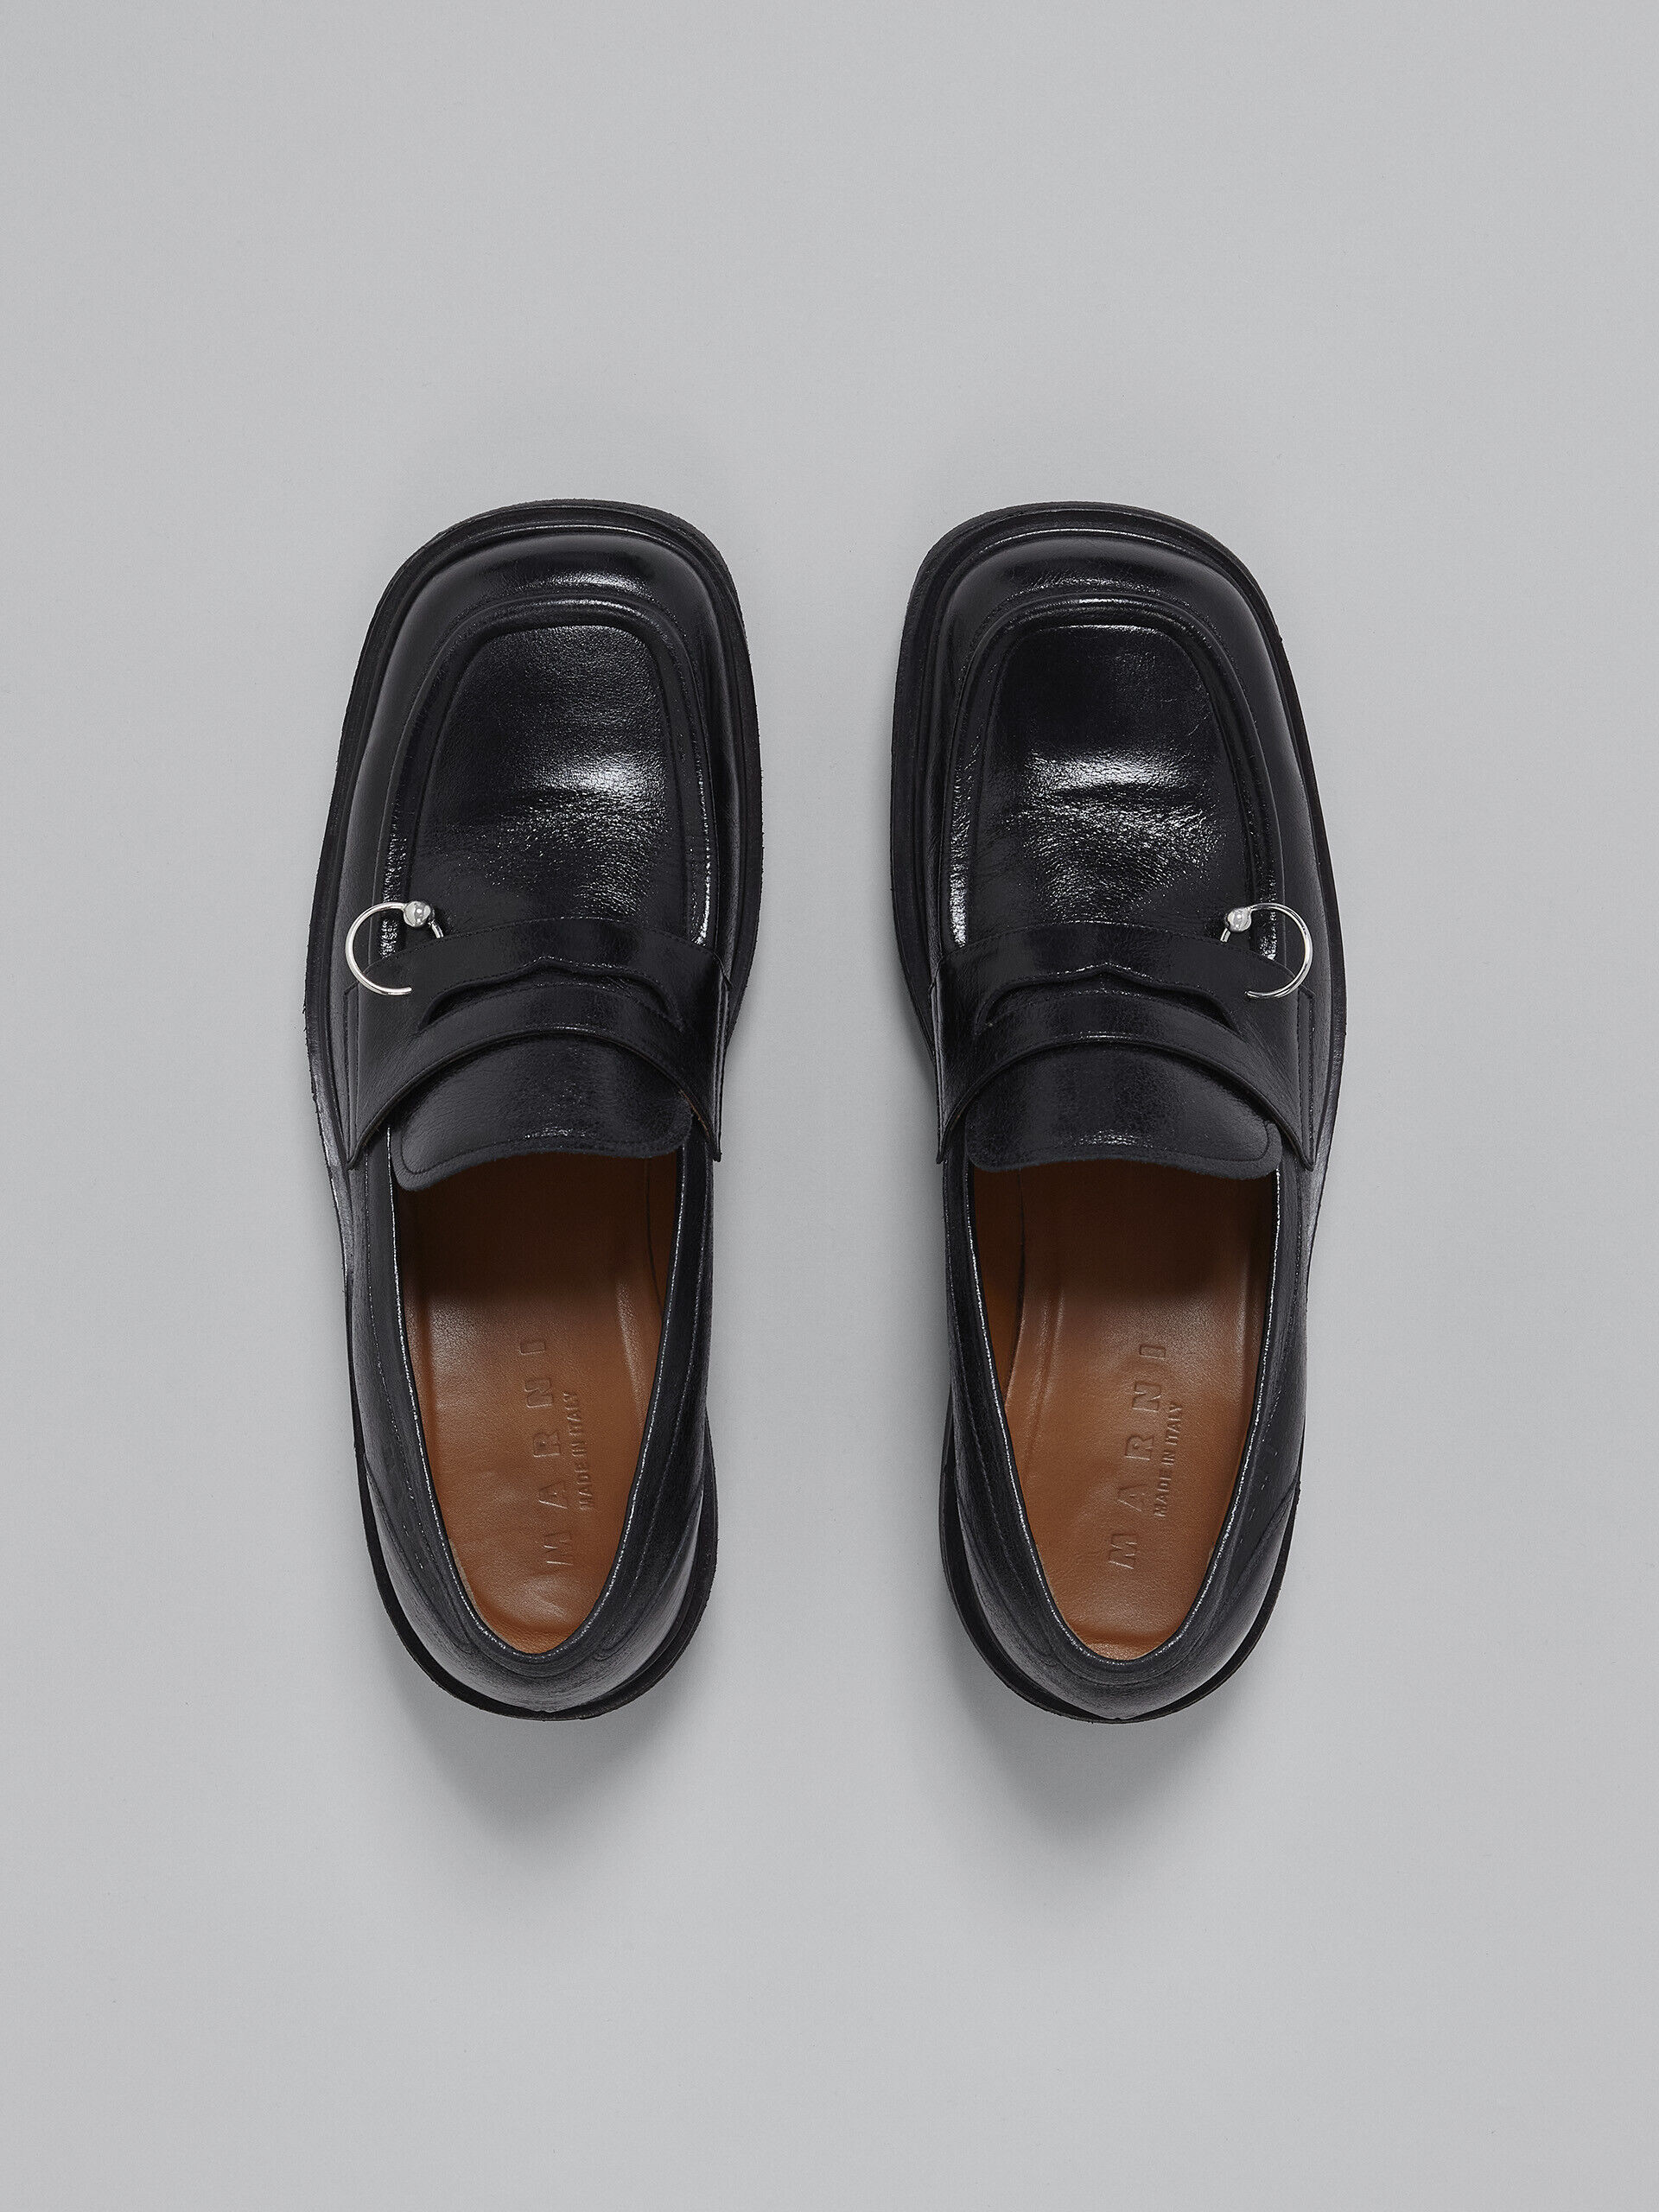 Black shiny leather moccasin | Marni